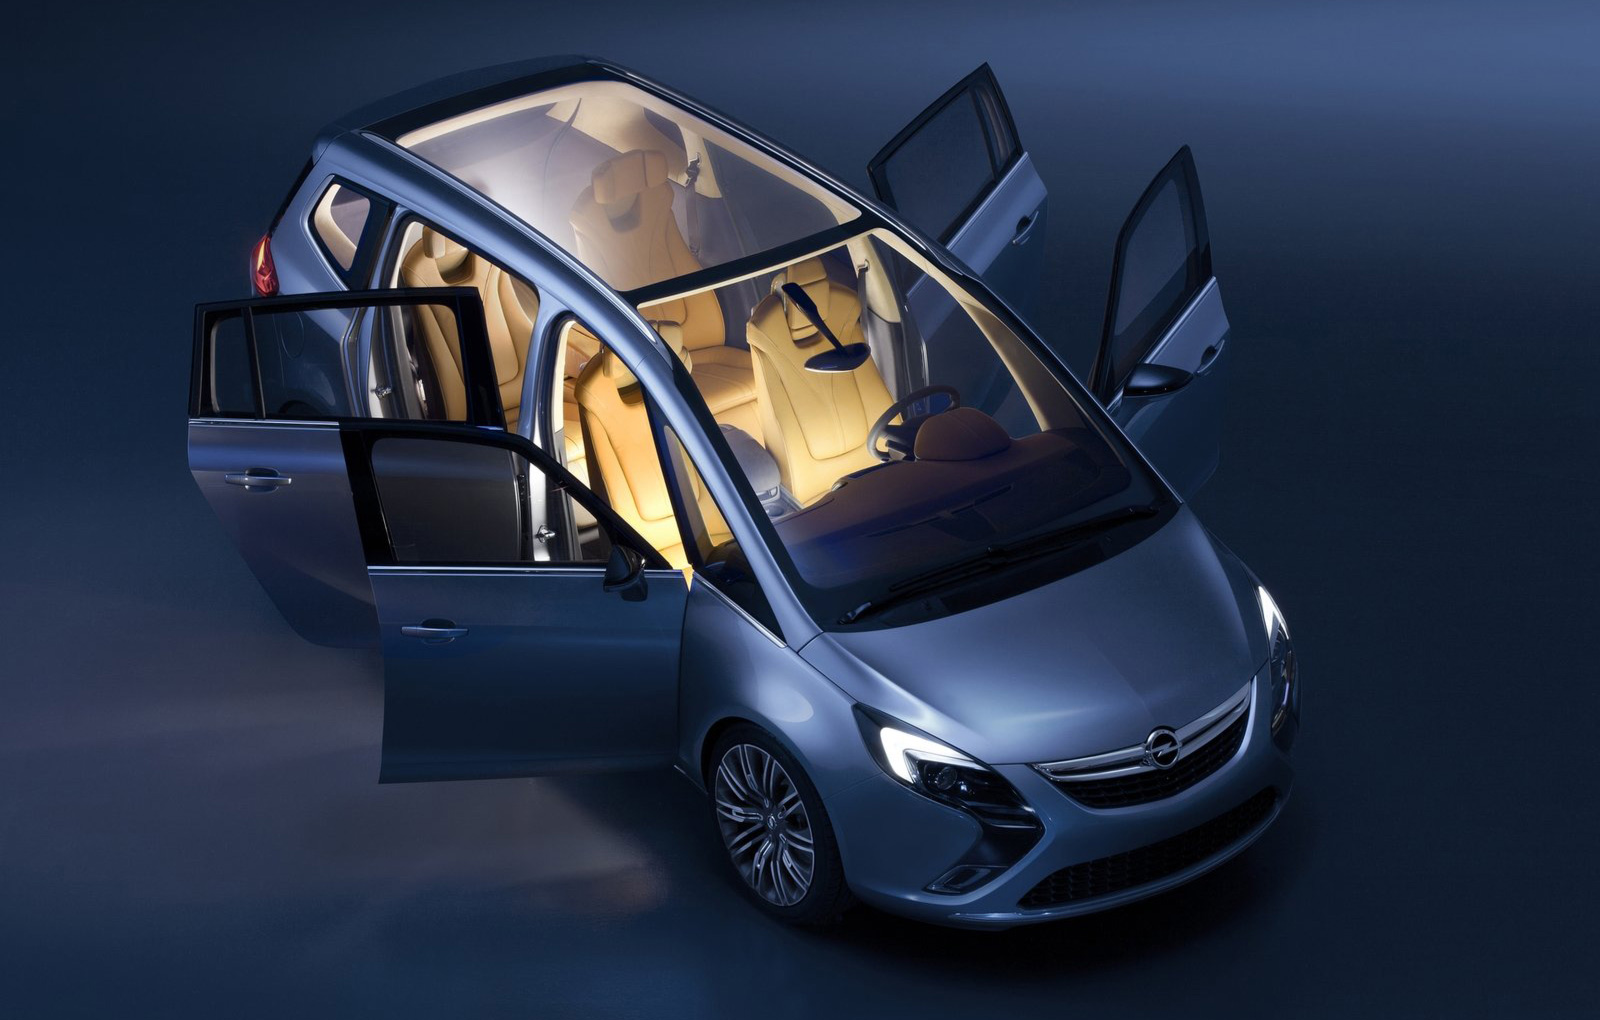 Opel Zafira Tourer concept